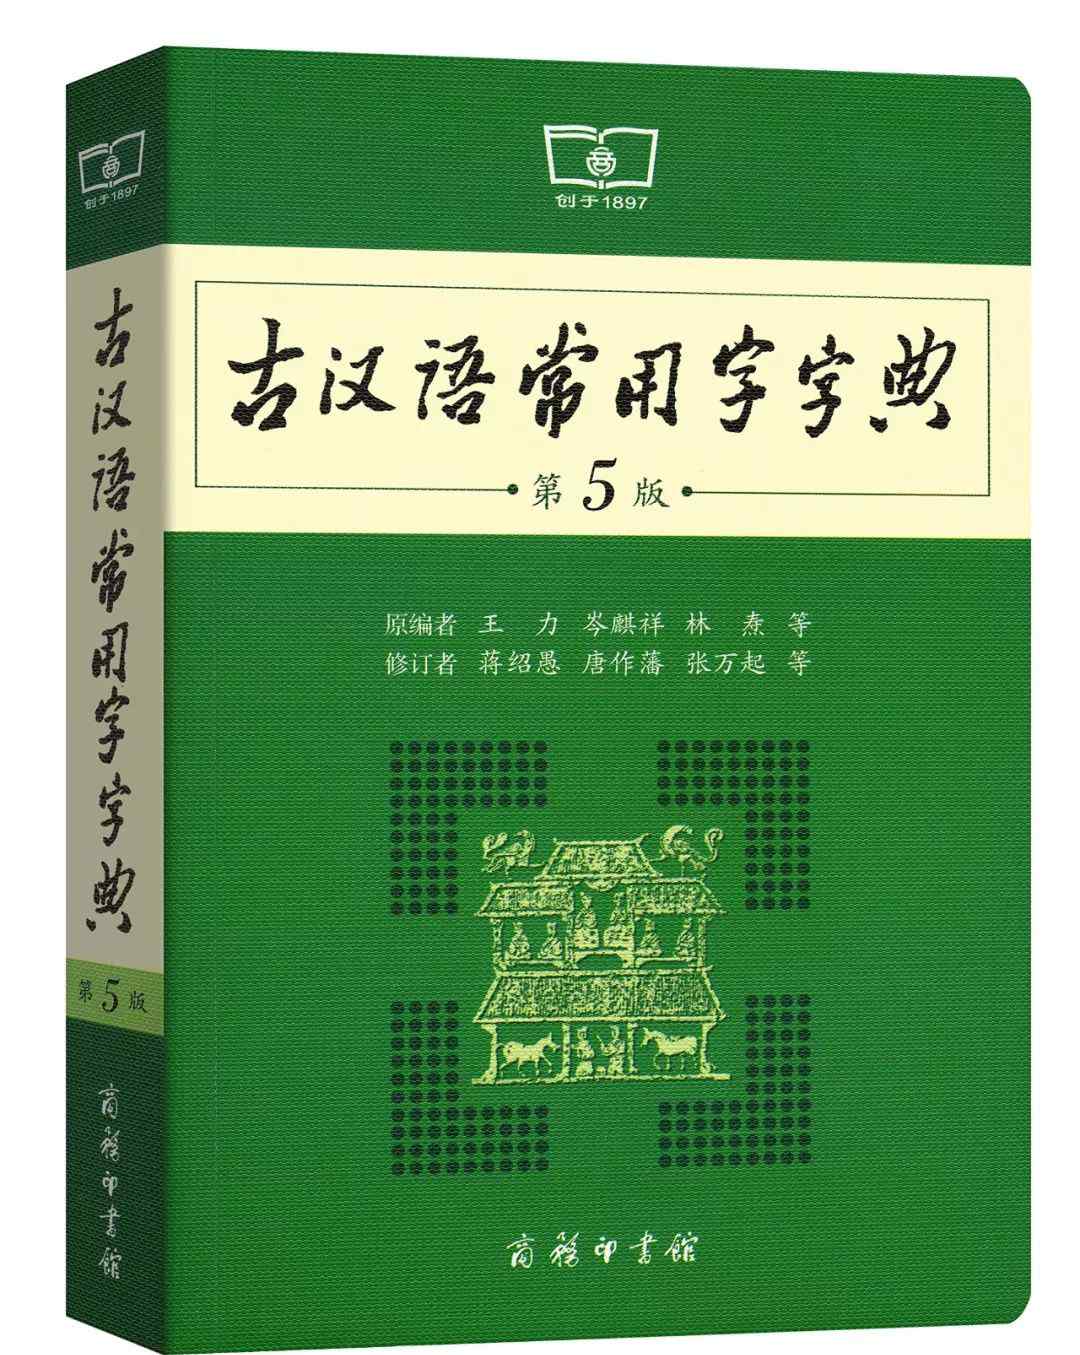 觳觫 100个古汉语词汇，读懂这些，就读懂了诗词